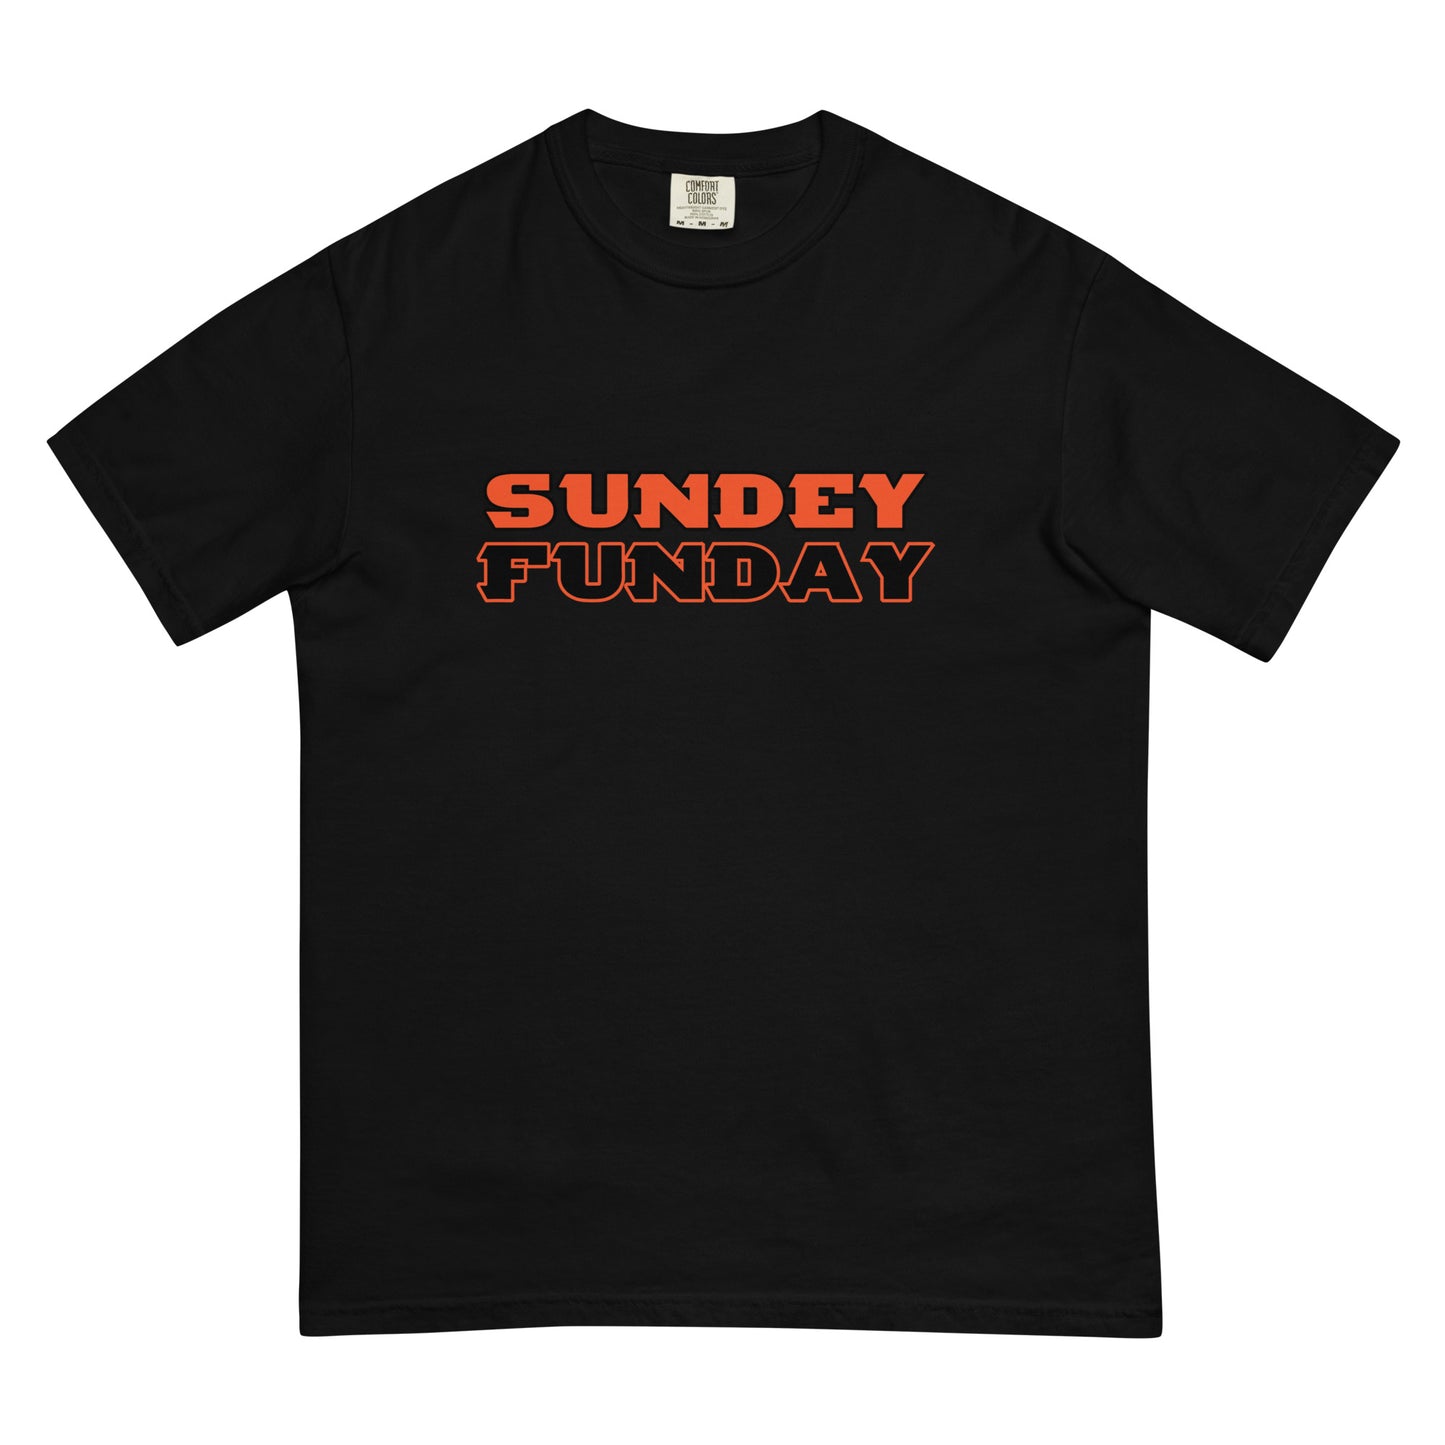 SunDEY Funday